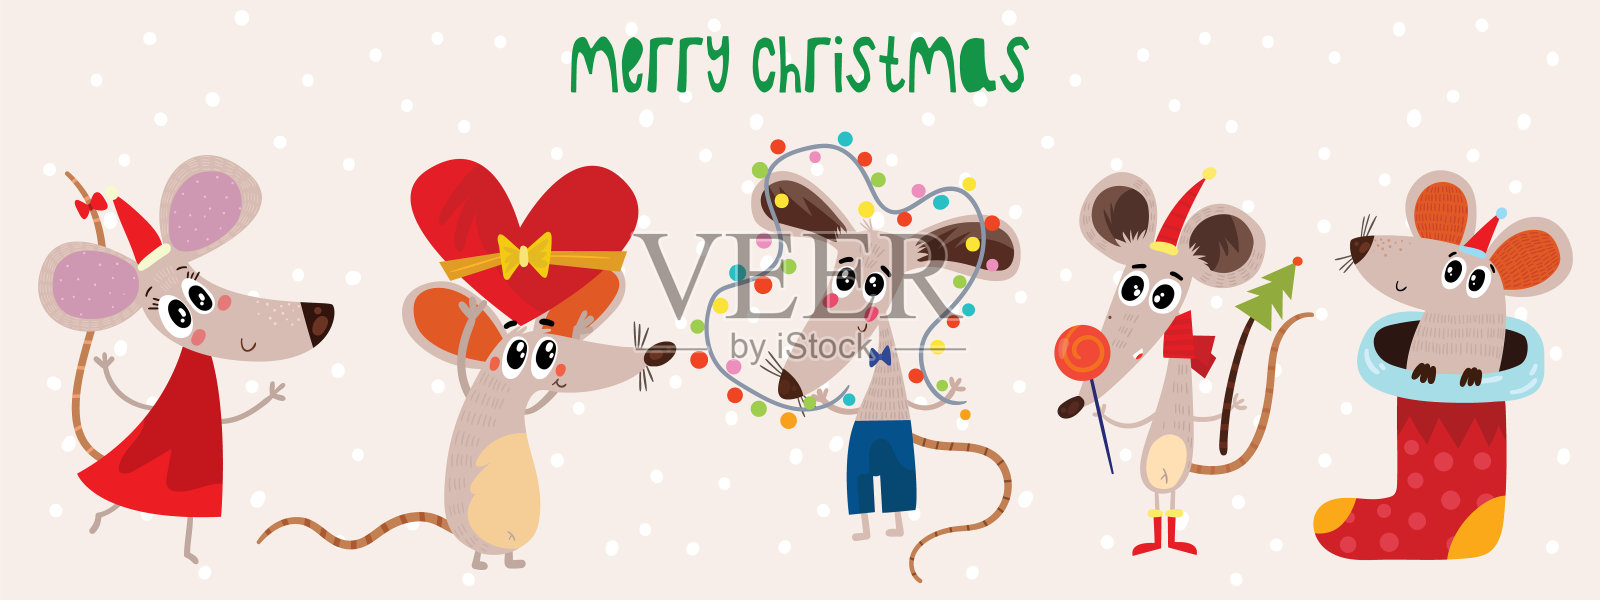 圣诞卡通老鼠收藏。冬季手绘一套可爱的象征2020年。新年老鼠和装饰品。设计模板素材